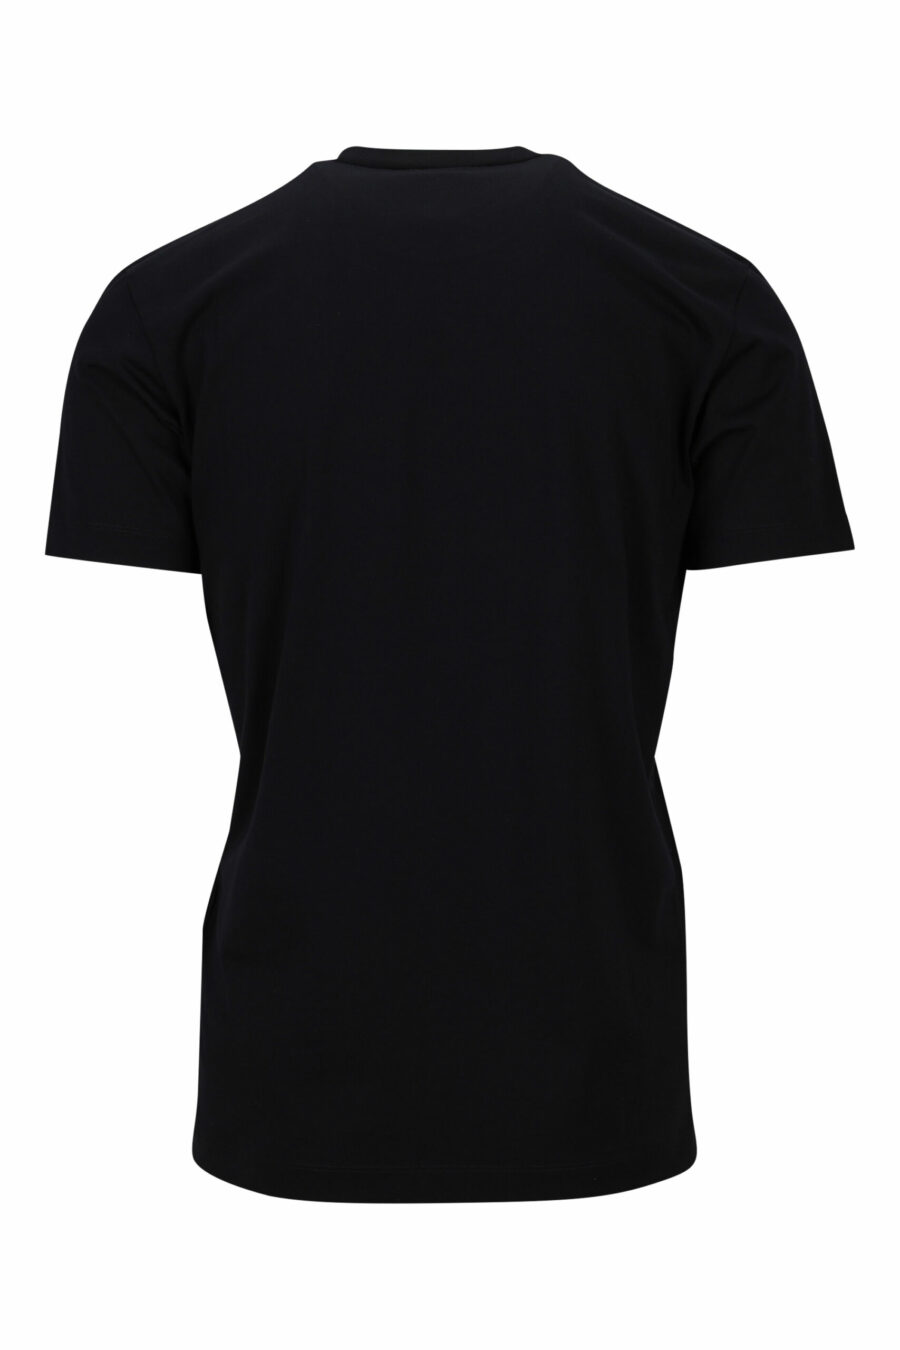 Camiseta negra con minilogo "ceresio 9, milano" - 8054148505264 1 scaled